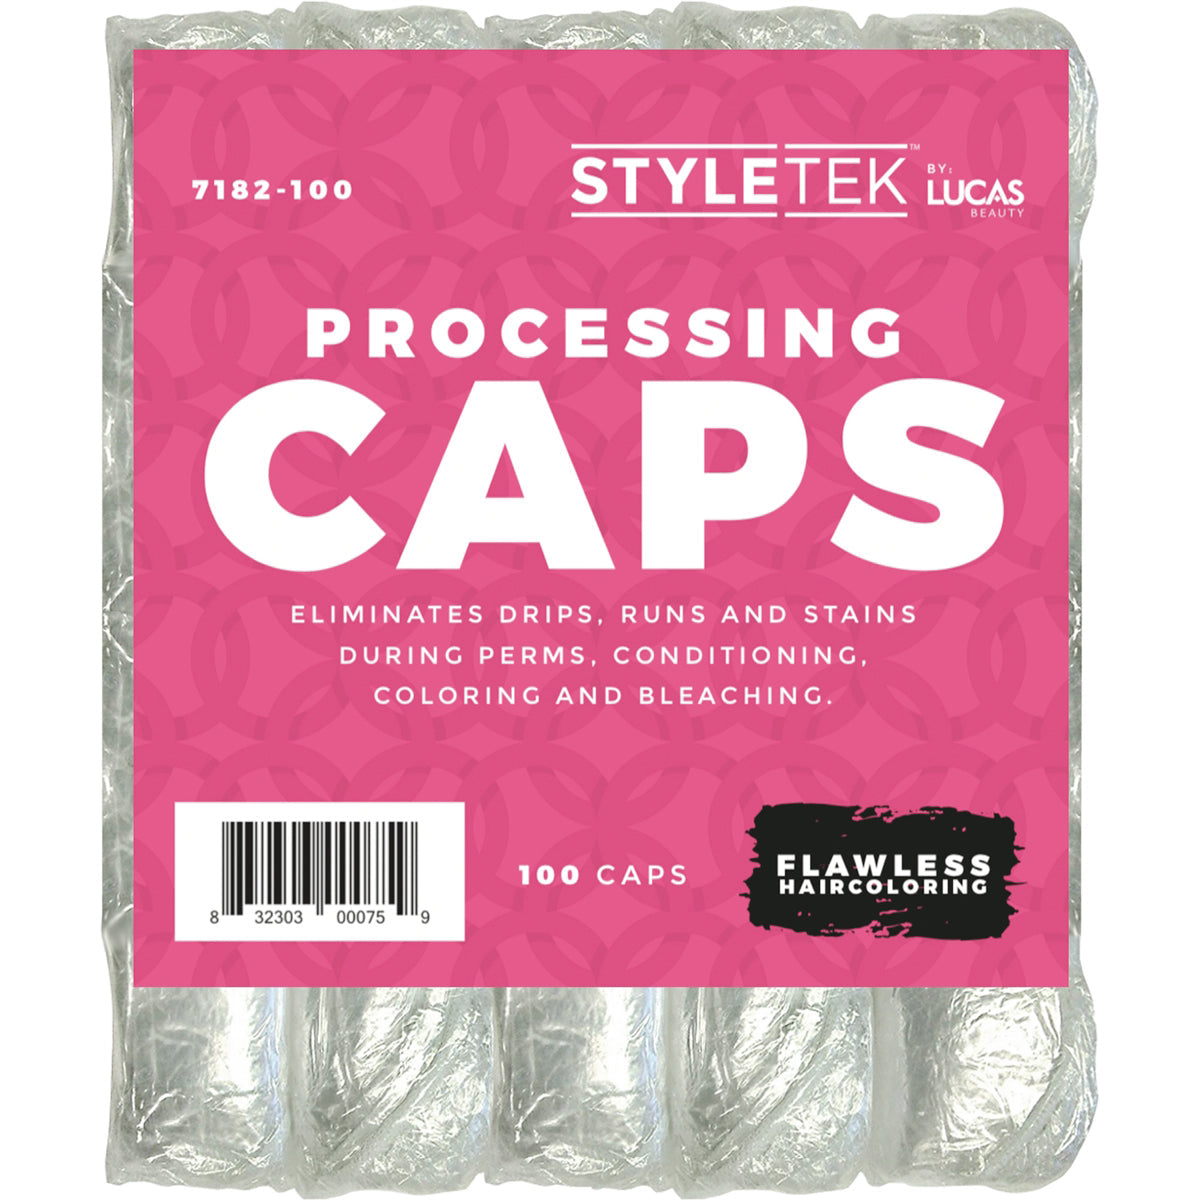 Processing Caps | 100 Caps | 7182-100 | STYLETEK Craft Foil STYLETEK 